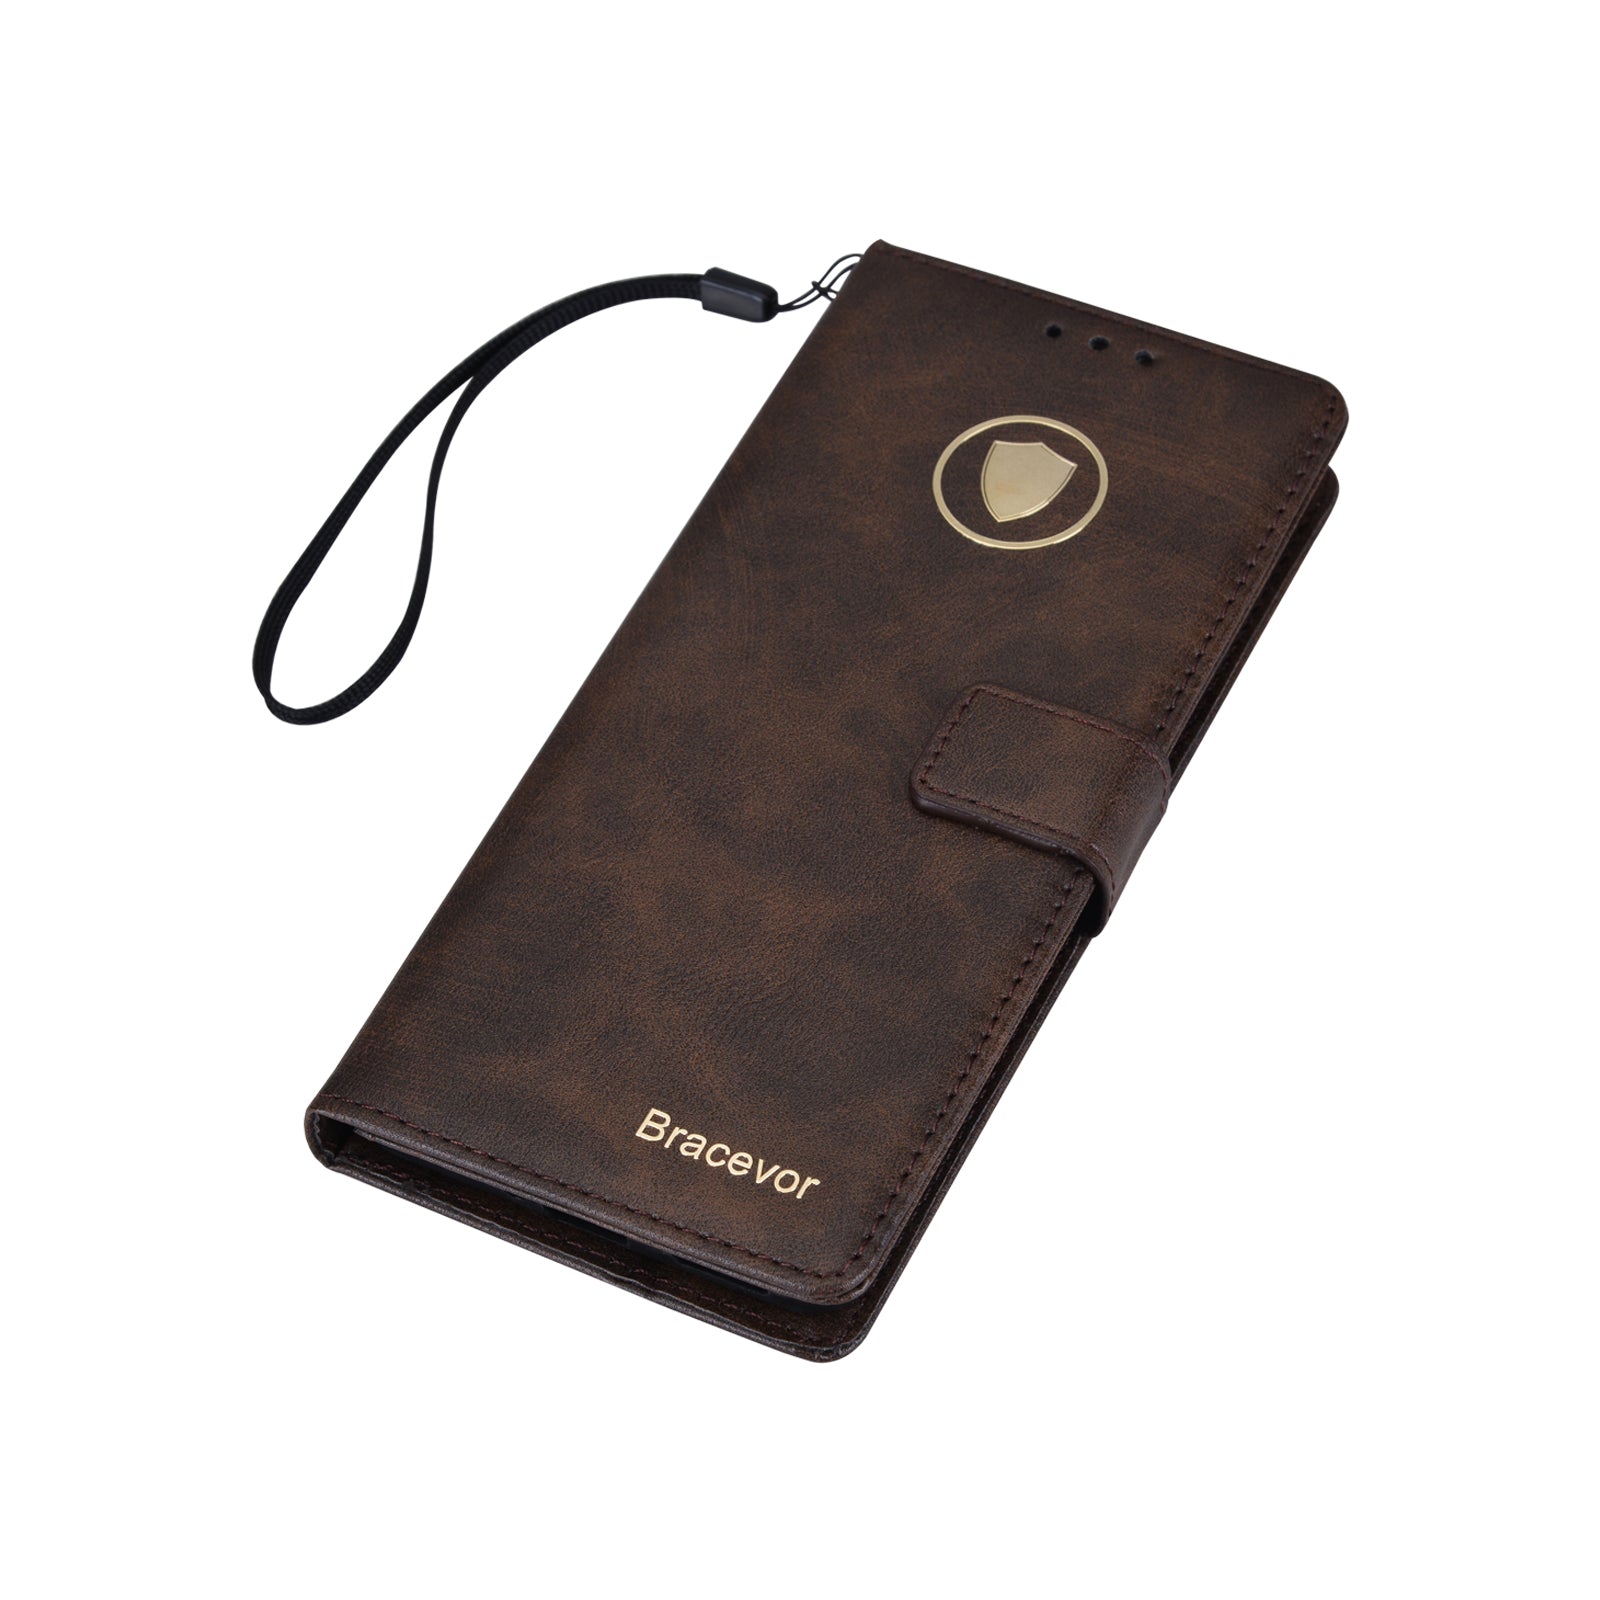 Bracevor Premium Design Flip Cover case for Oneplus 10T 5G